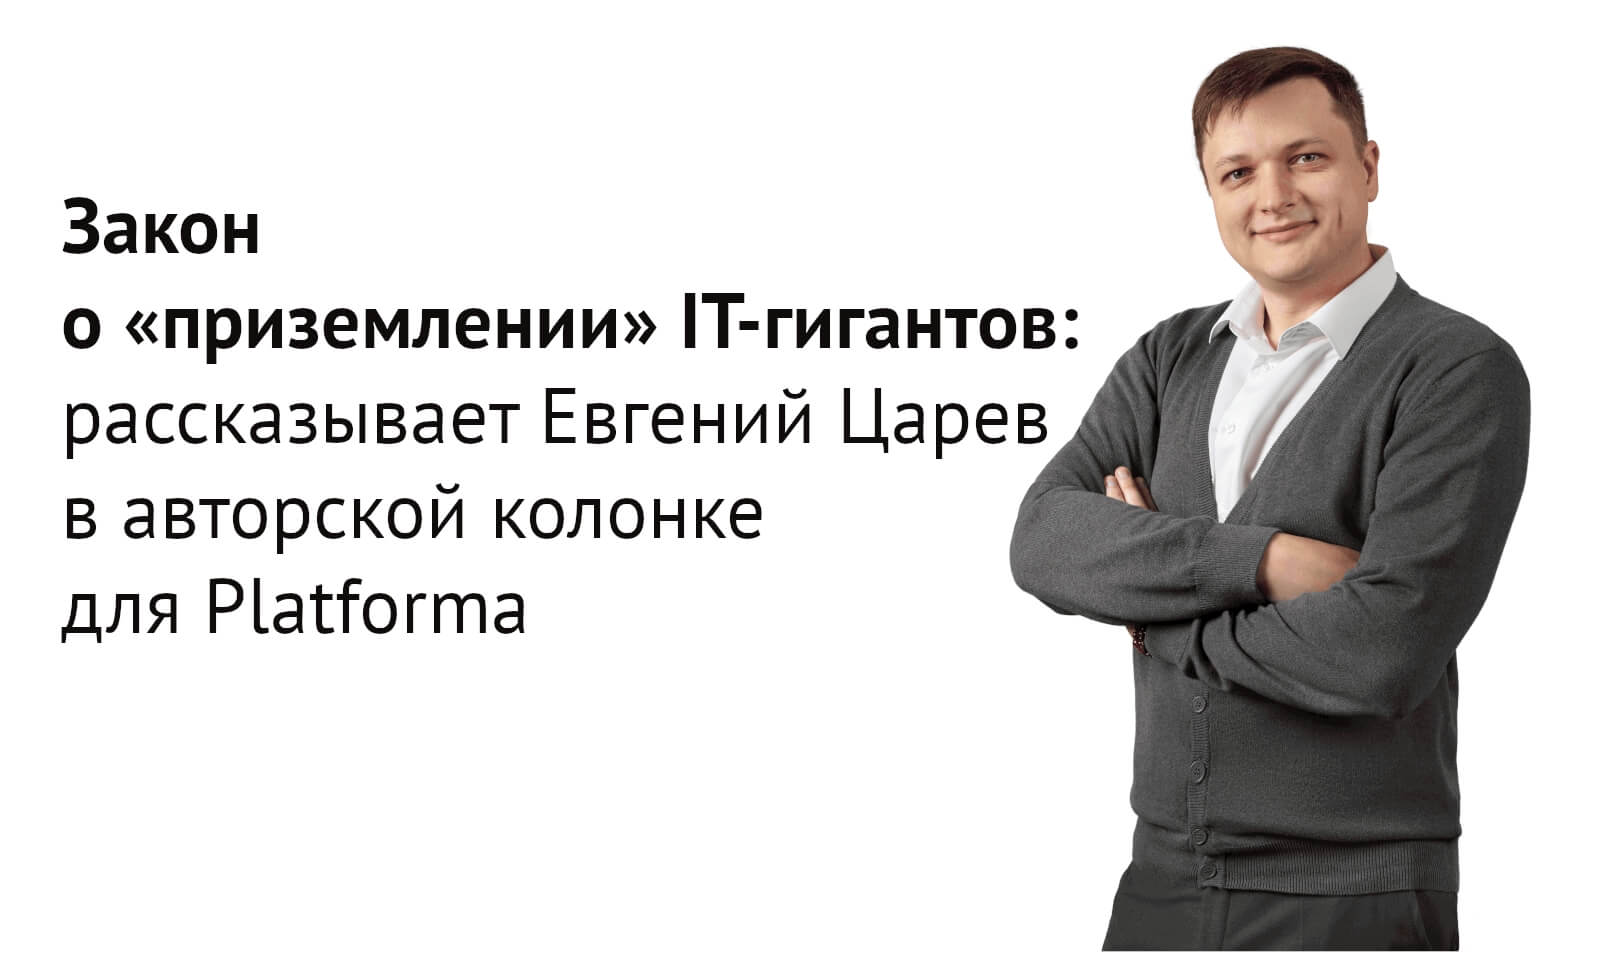 Закон о «приземлении» IT-гигантов: рассказывает Евгений Царев в авторской колонке для Platforma